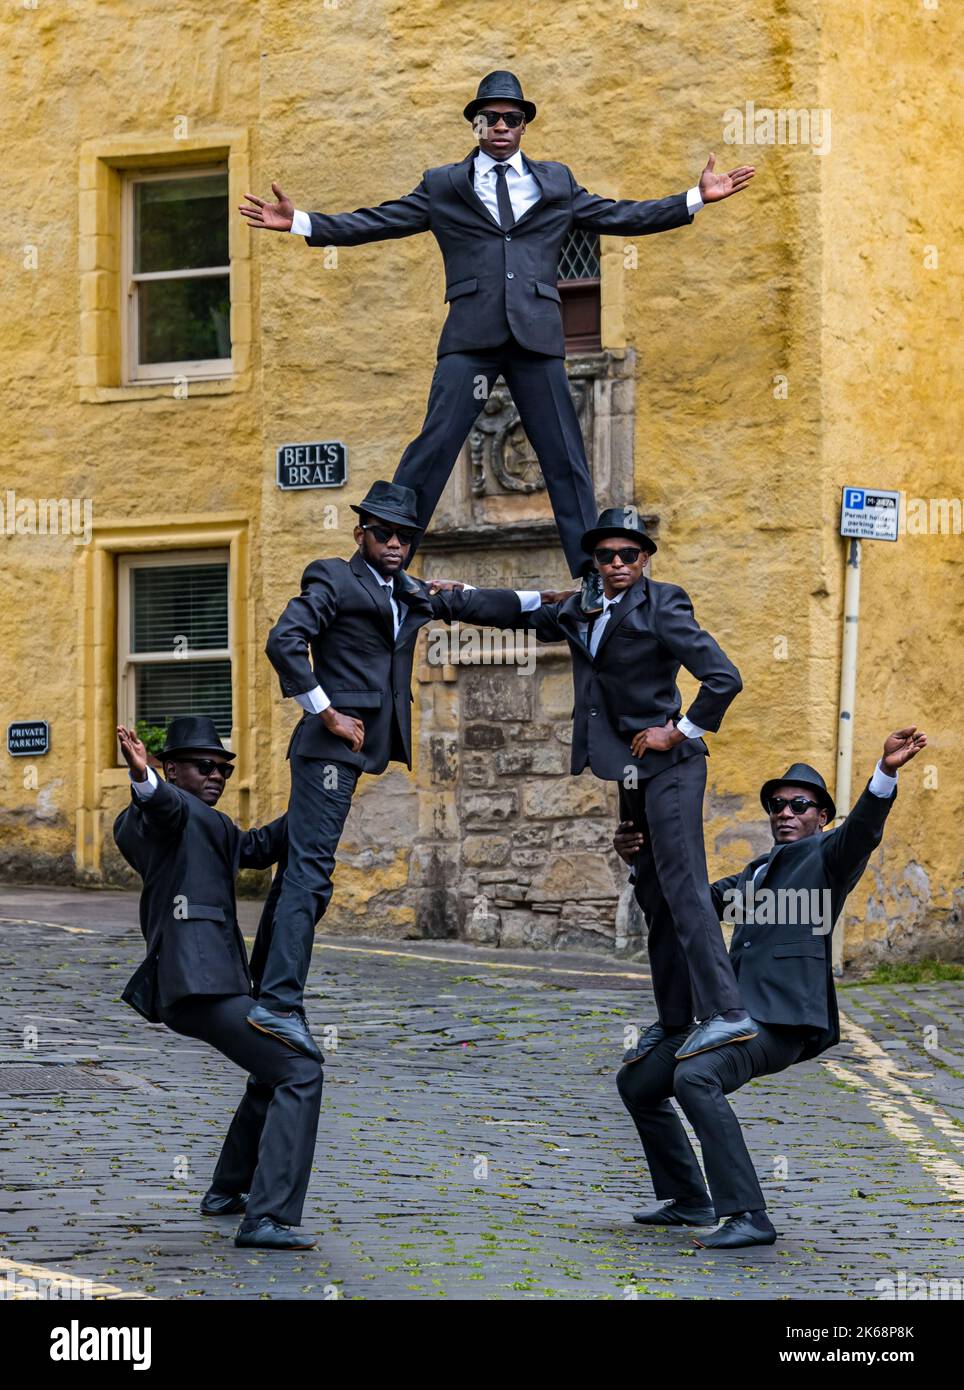 Die akrobatische Gruppe der Black Blues Brothers treten im Dean Village auf, um eine menschliche Pyramide zu erschaffen, Edinburgh, Schottland, Großbritannien Stockfoto